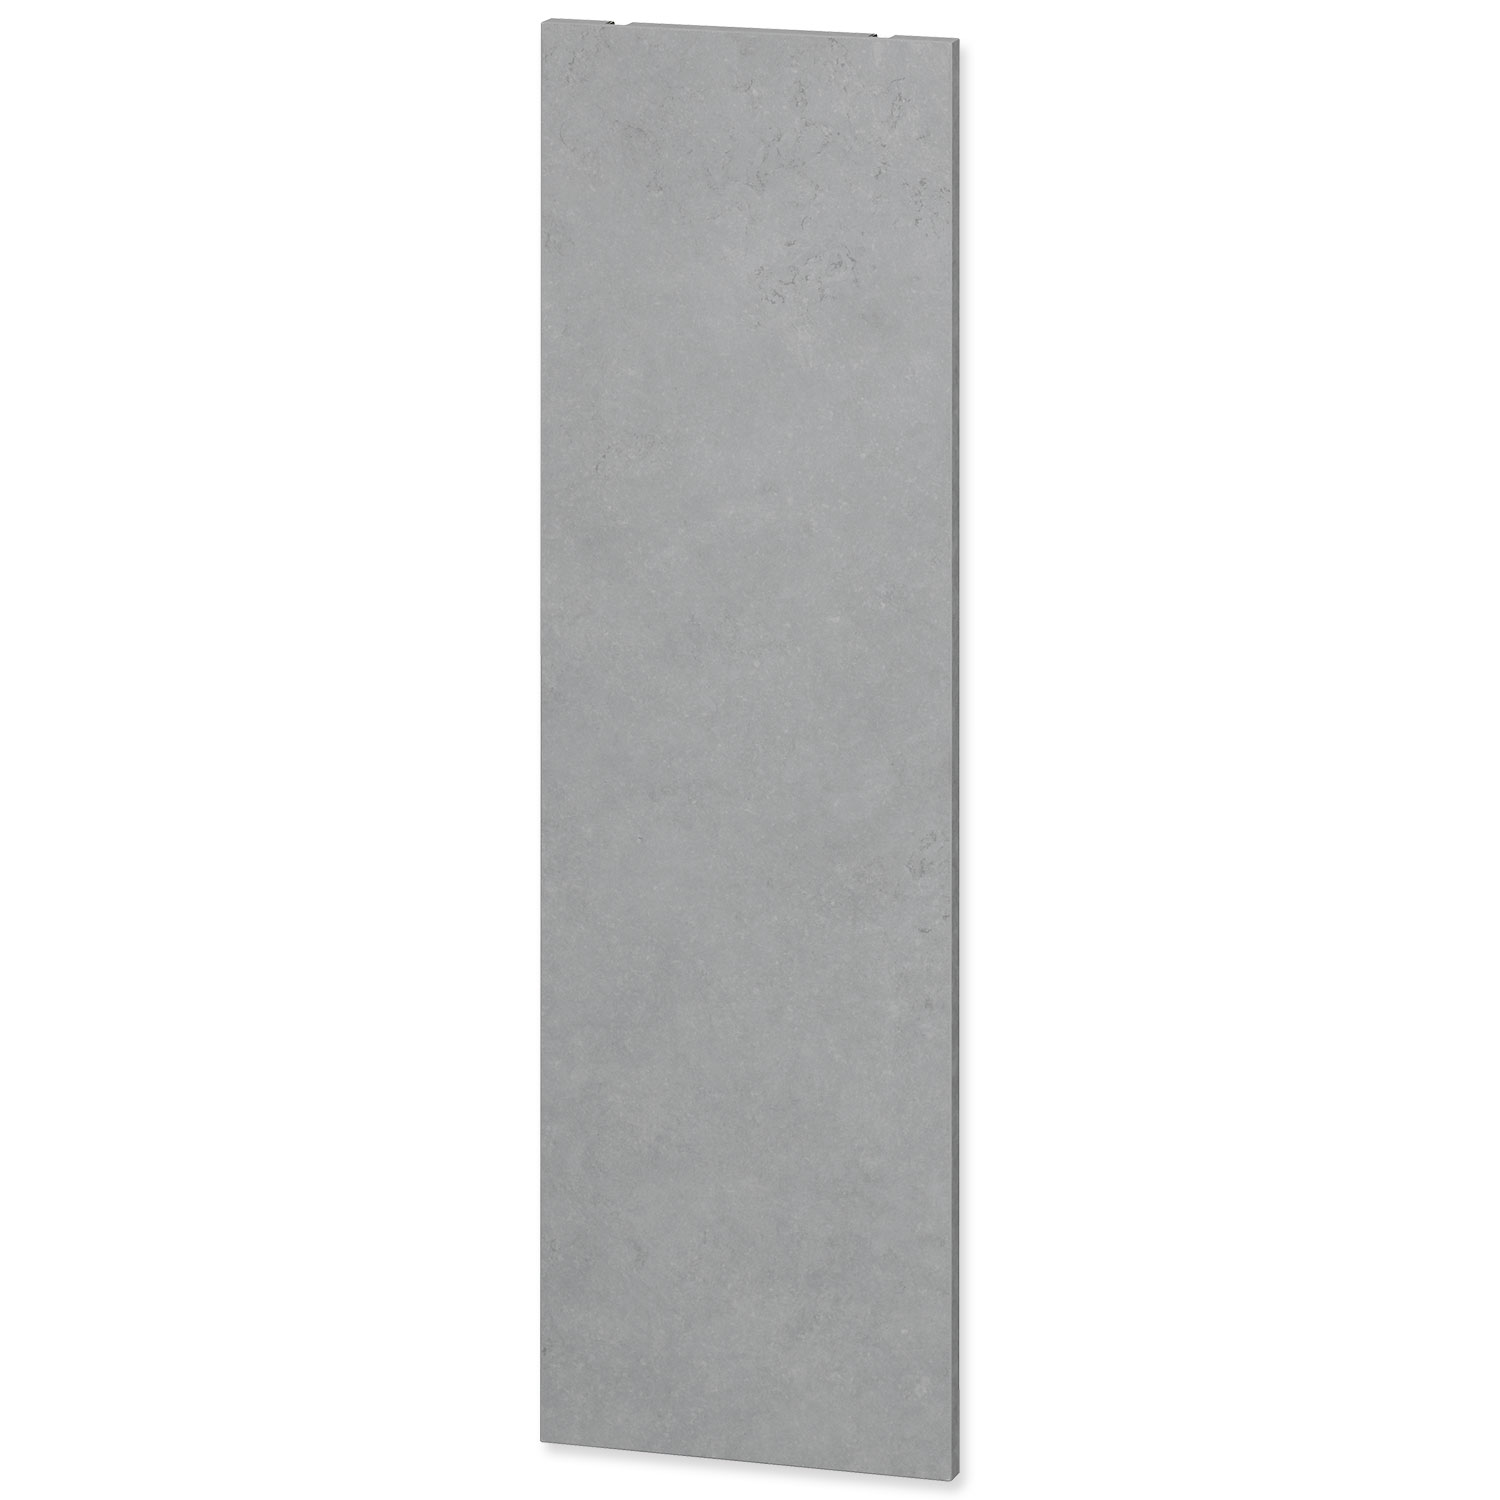 Náhradní lišta EHEIM dekorativní pro Vivaline LED - šedý beton